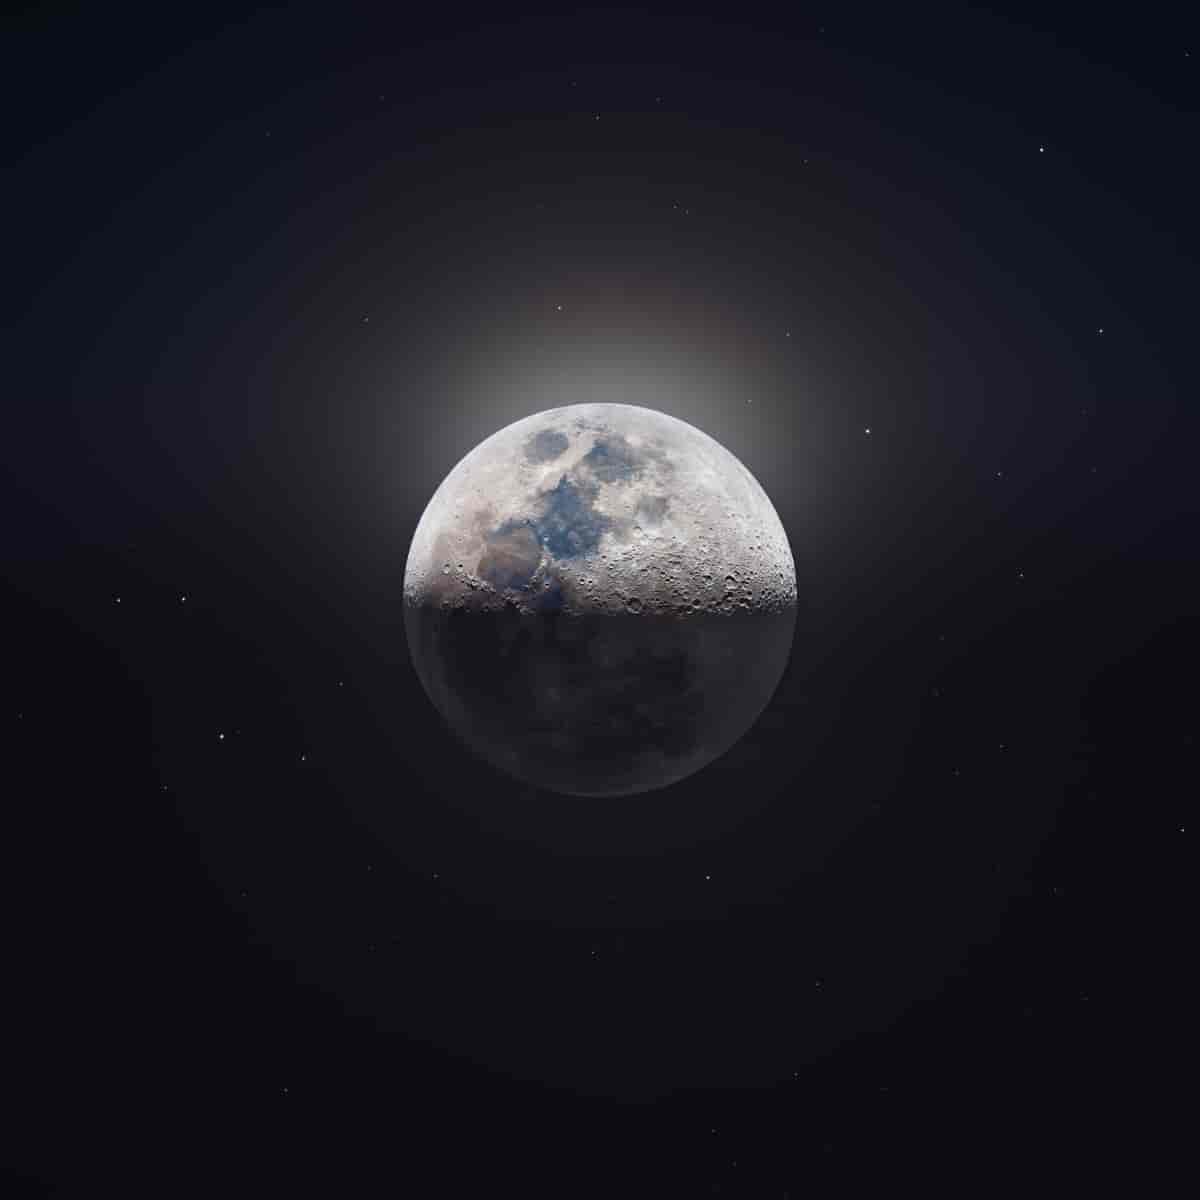 Un passionné réalise une photo de 85 megapixel de la lune : 